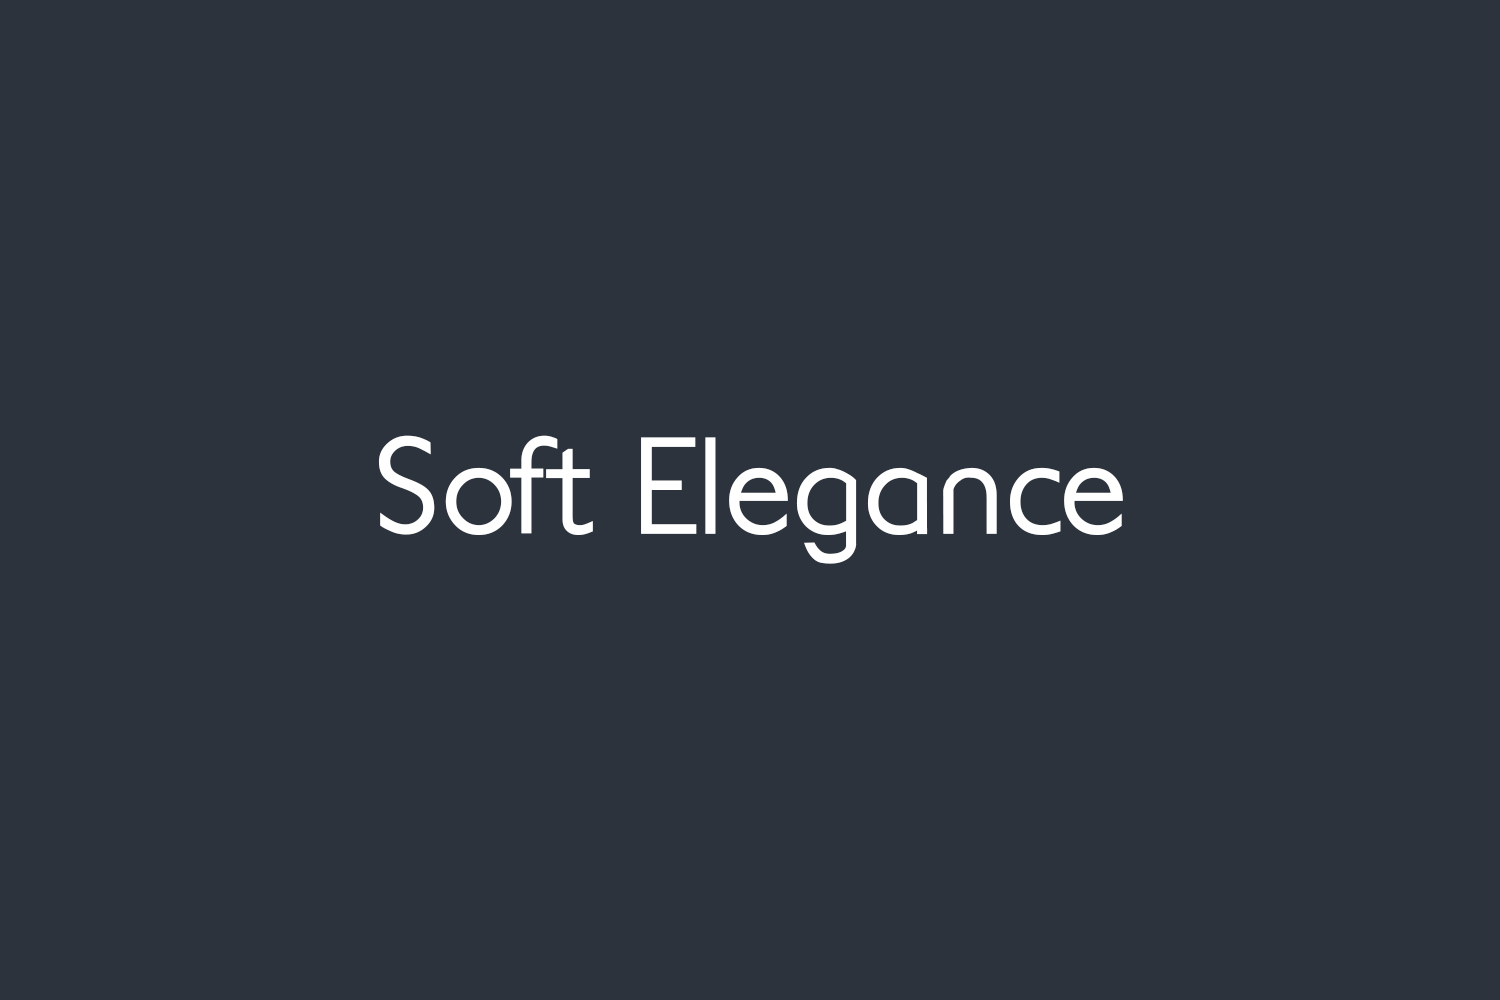 Soft Elegance Free Font